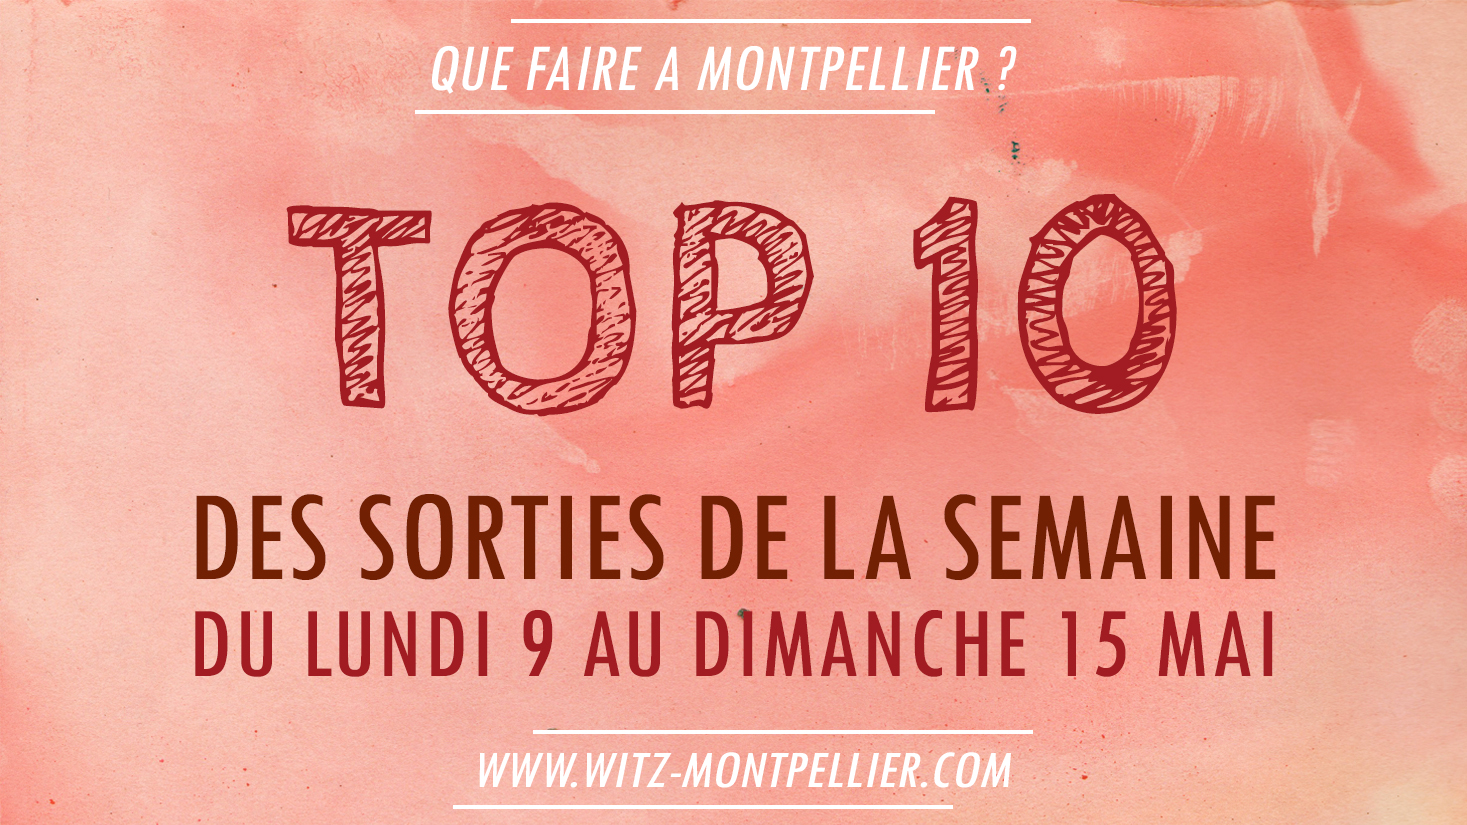 Top 10 des Sorties de la Semaine à Montpellier